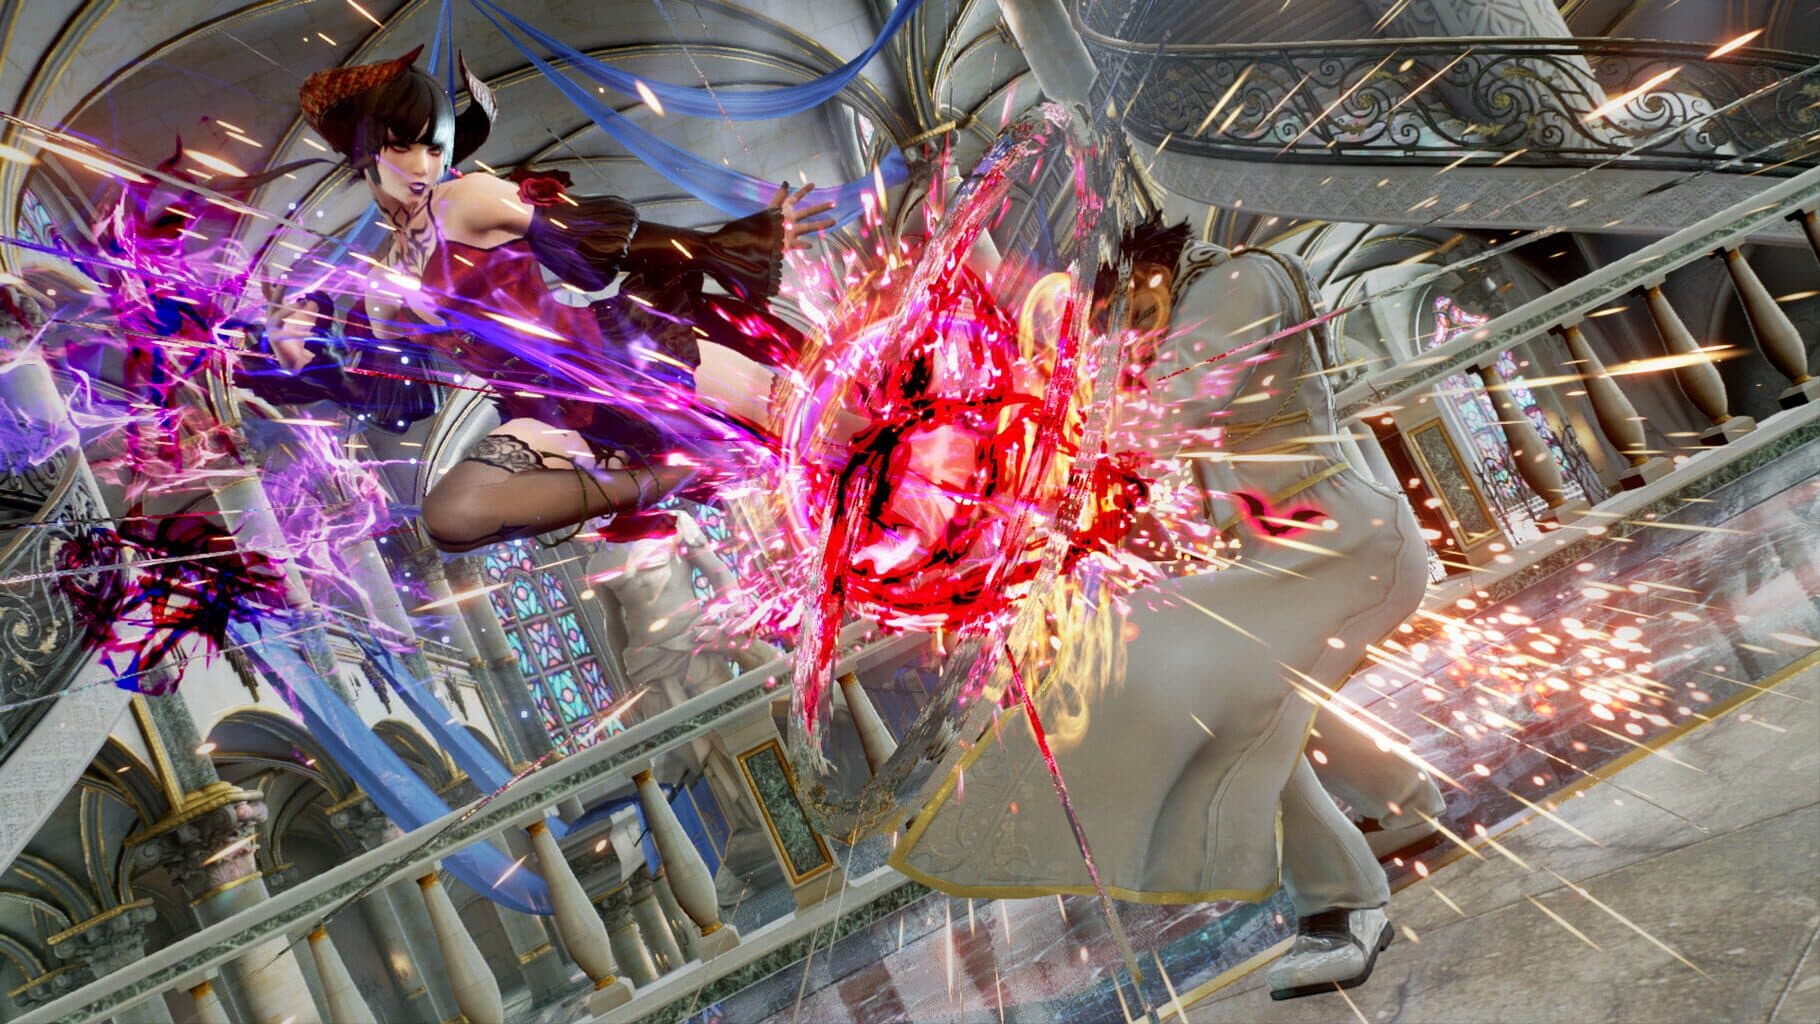 Tekken 7: Eliza Image